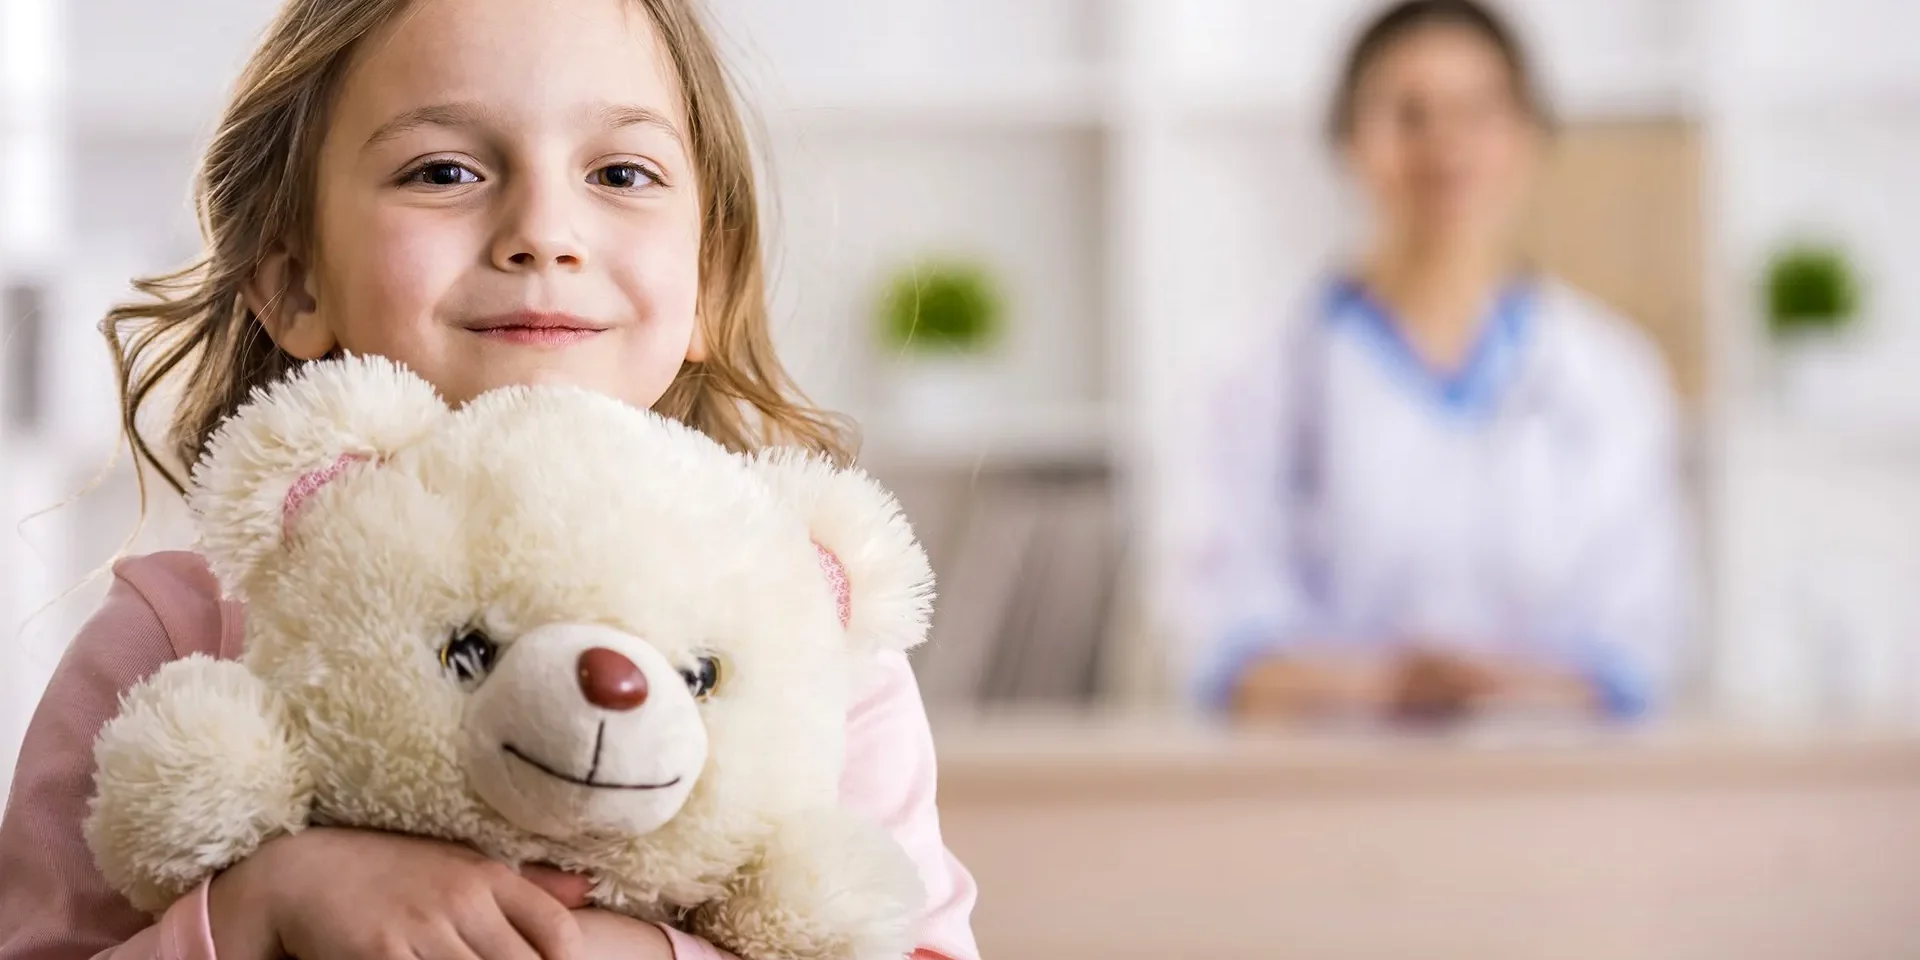 Νοσοκομειακή κάλυψη για το παιδί: Τι πρέπει να γνωρίζετε